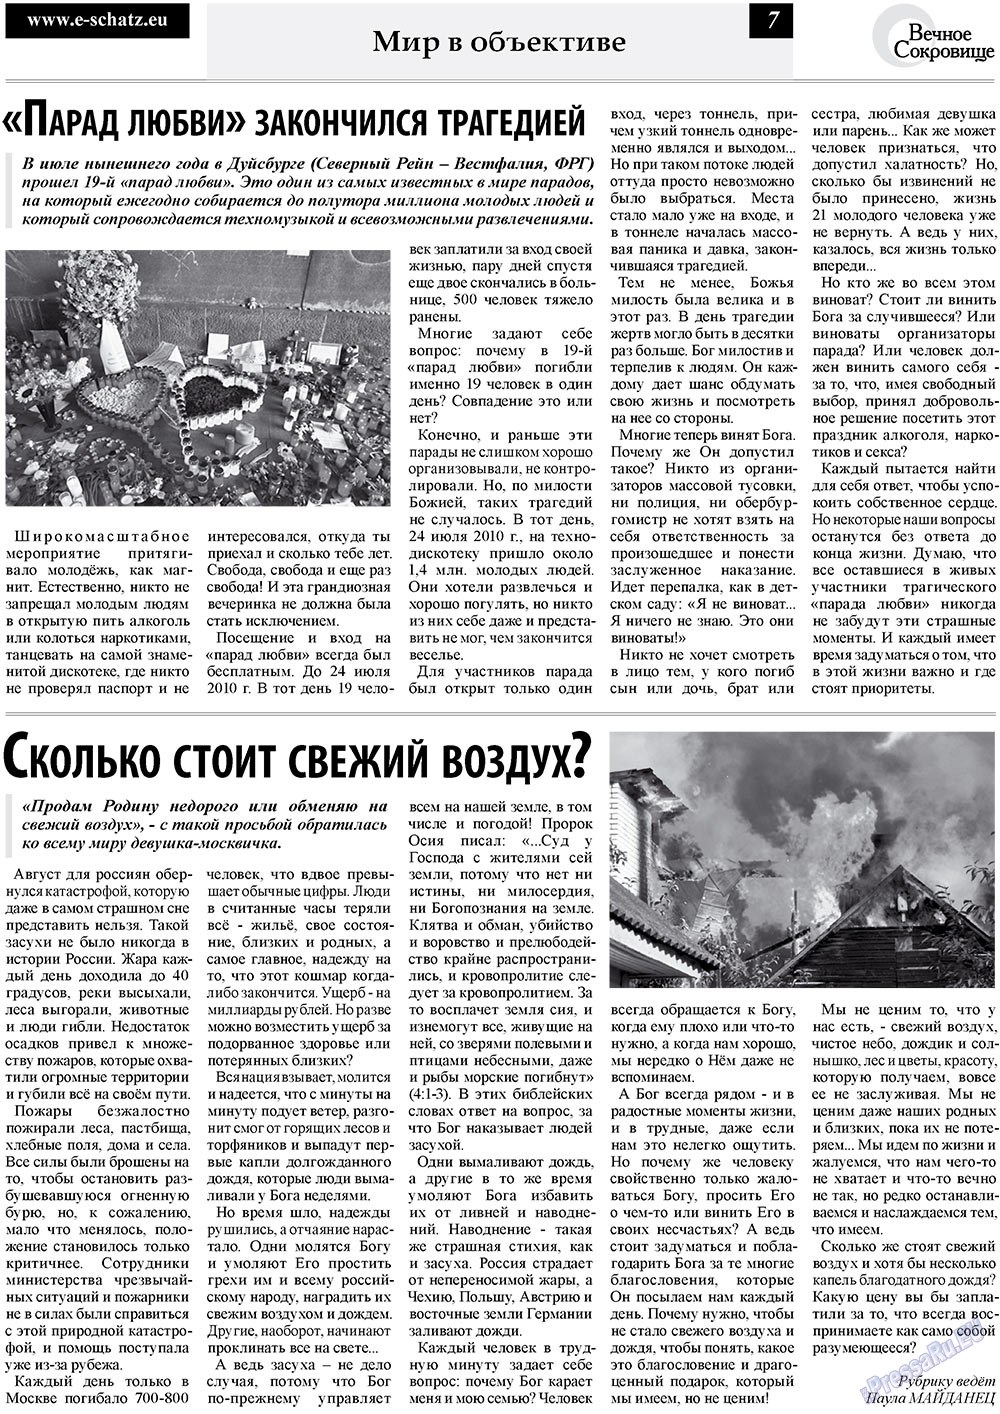 Вечное сокровище (газета). 2010 год, номер 3, стр. 7